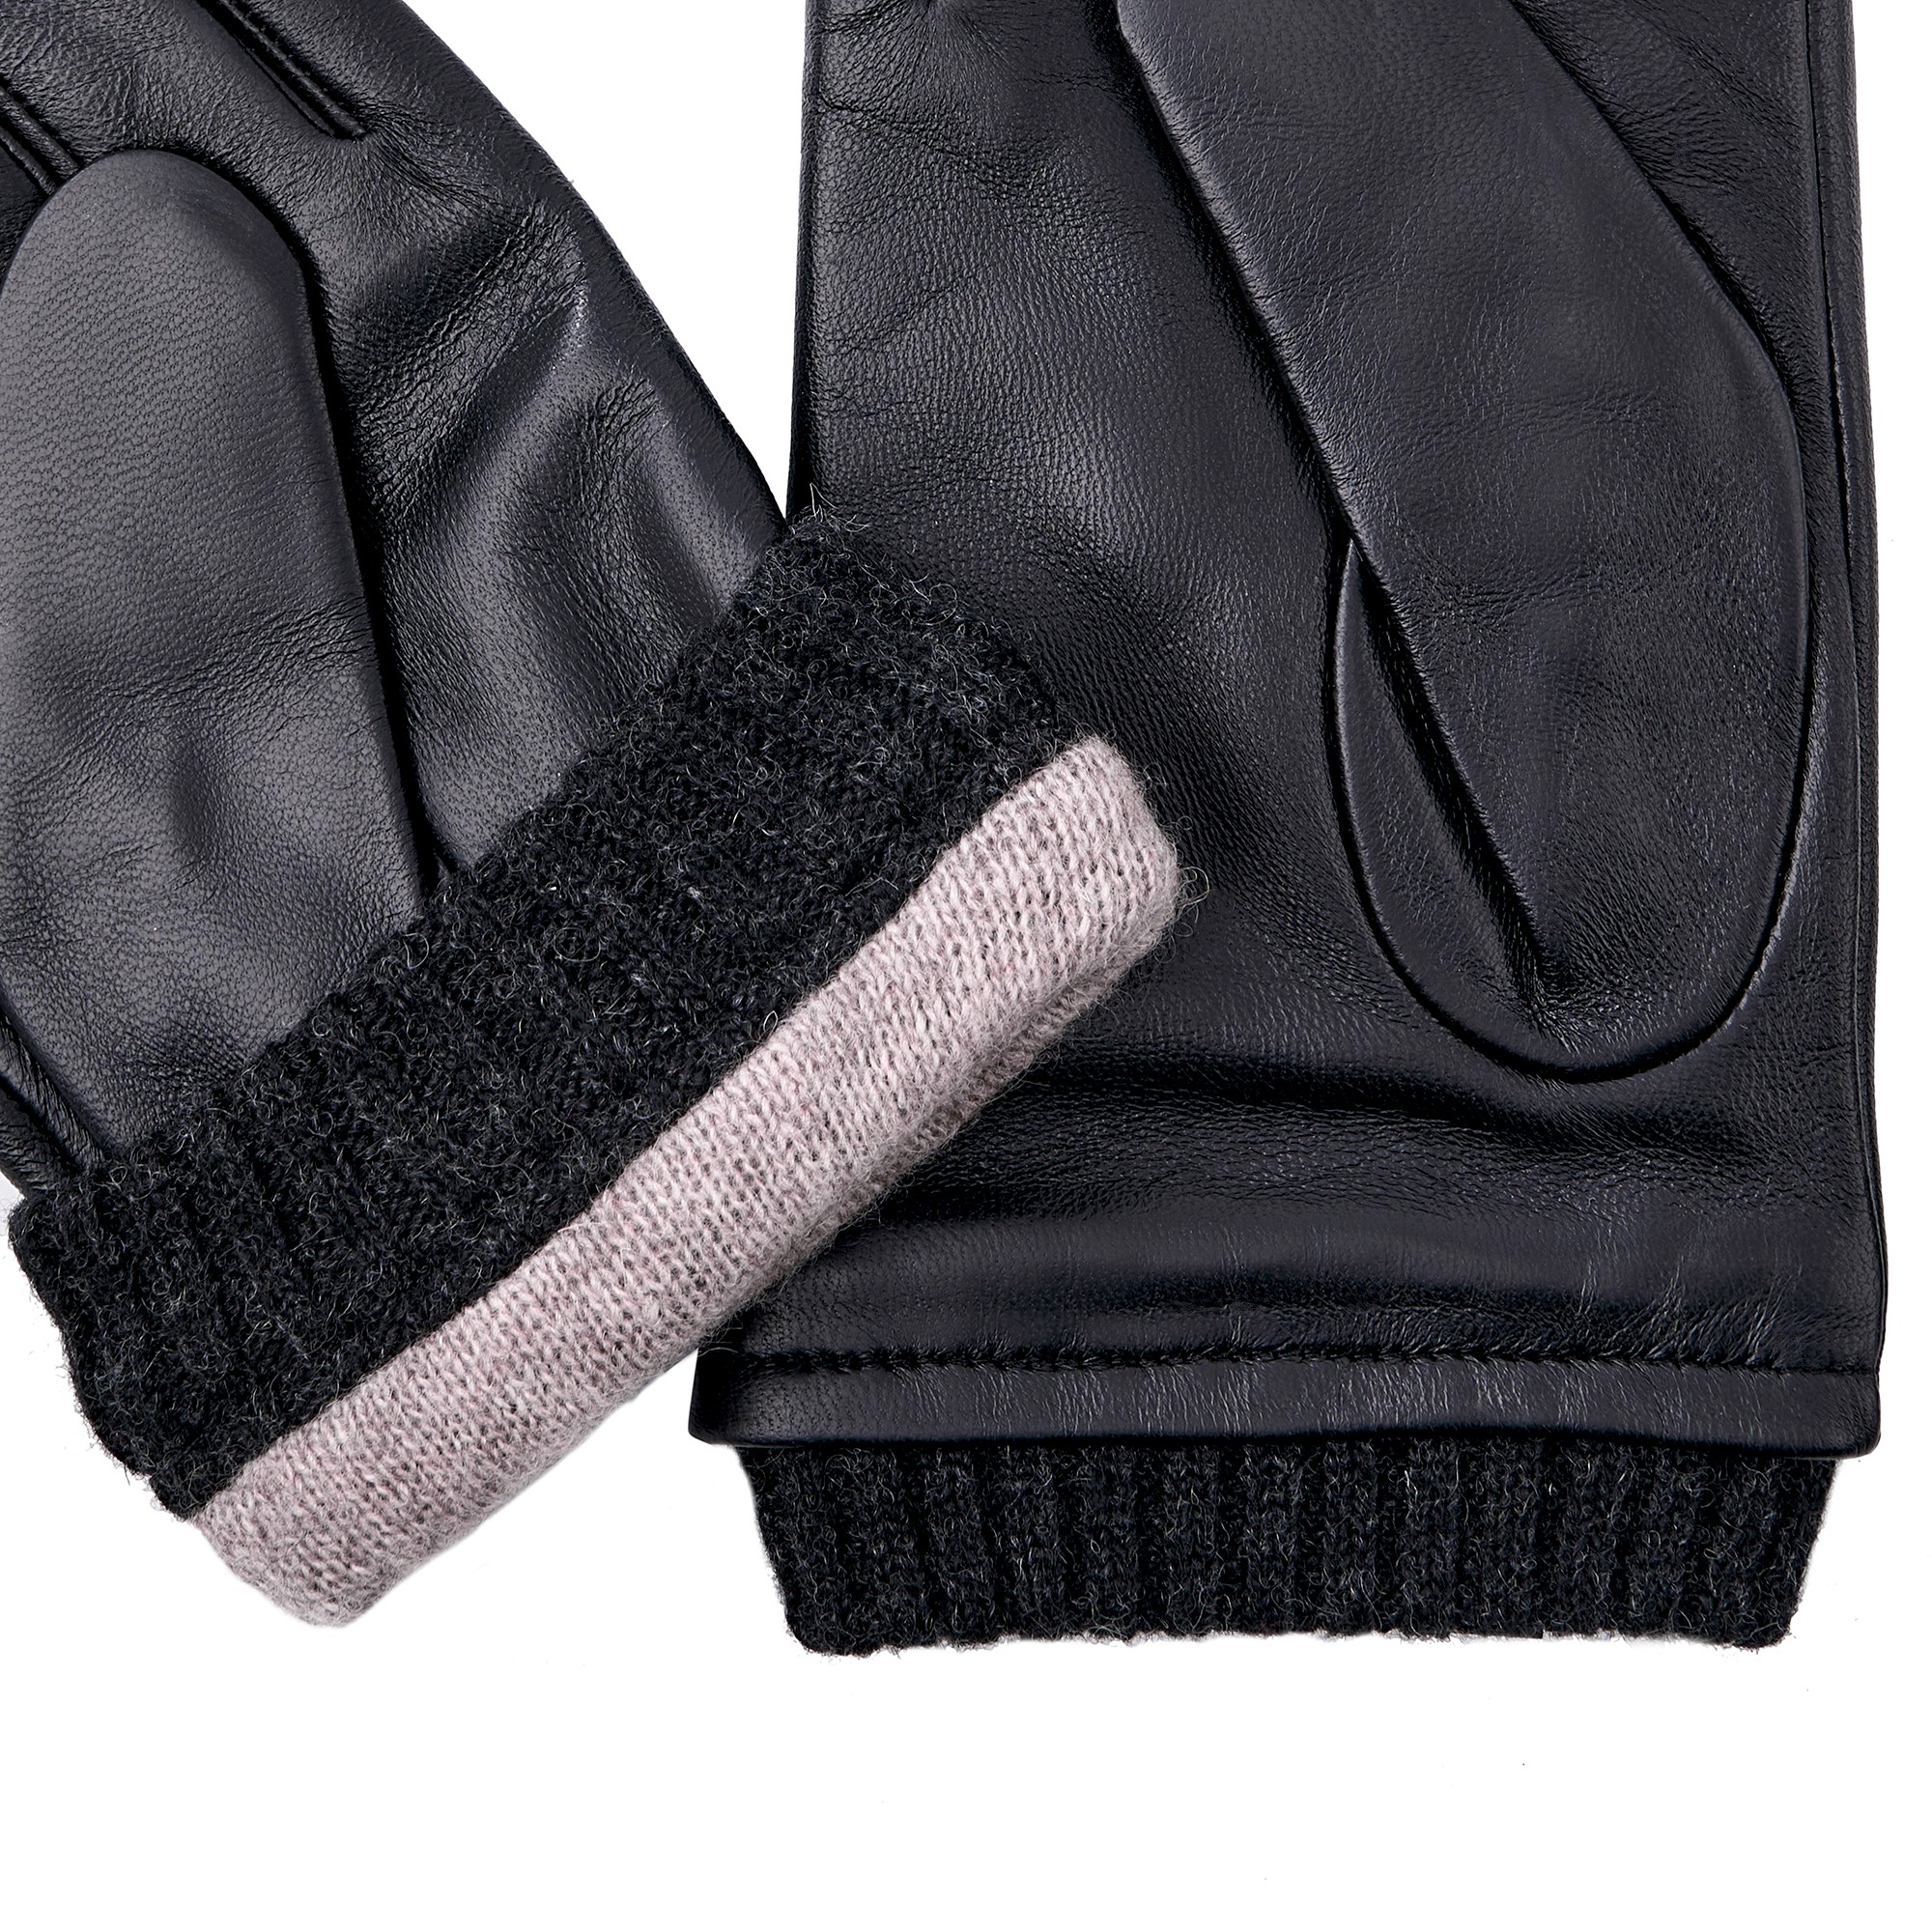 Др.Коффер H760129-236-04 перчатки (9,5), размер 9, цвет черный - фото 4